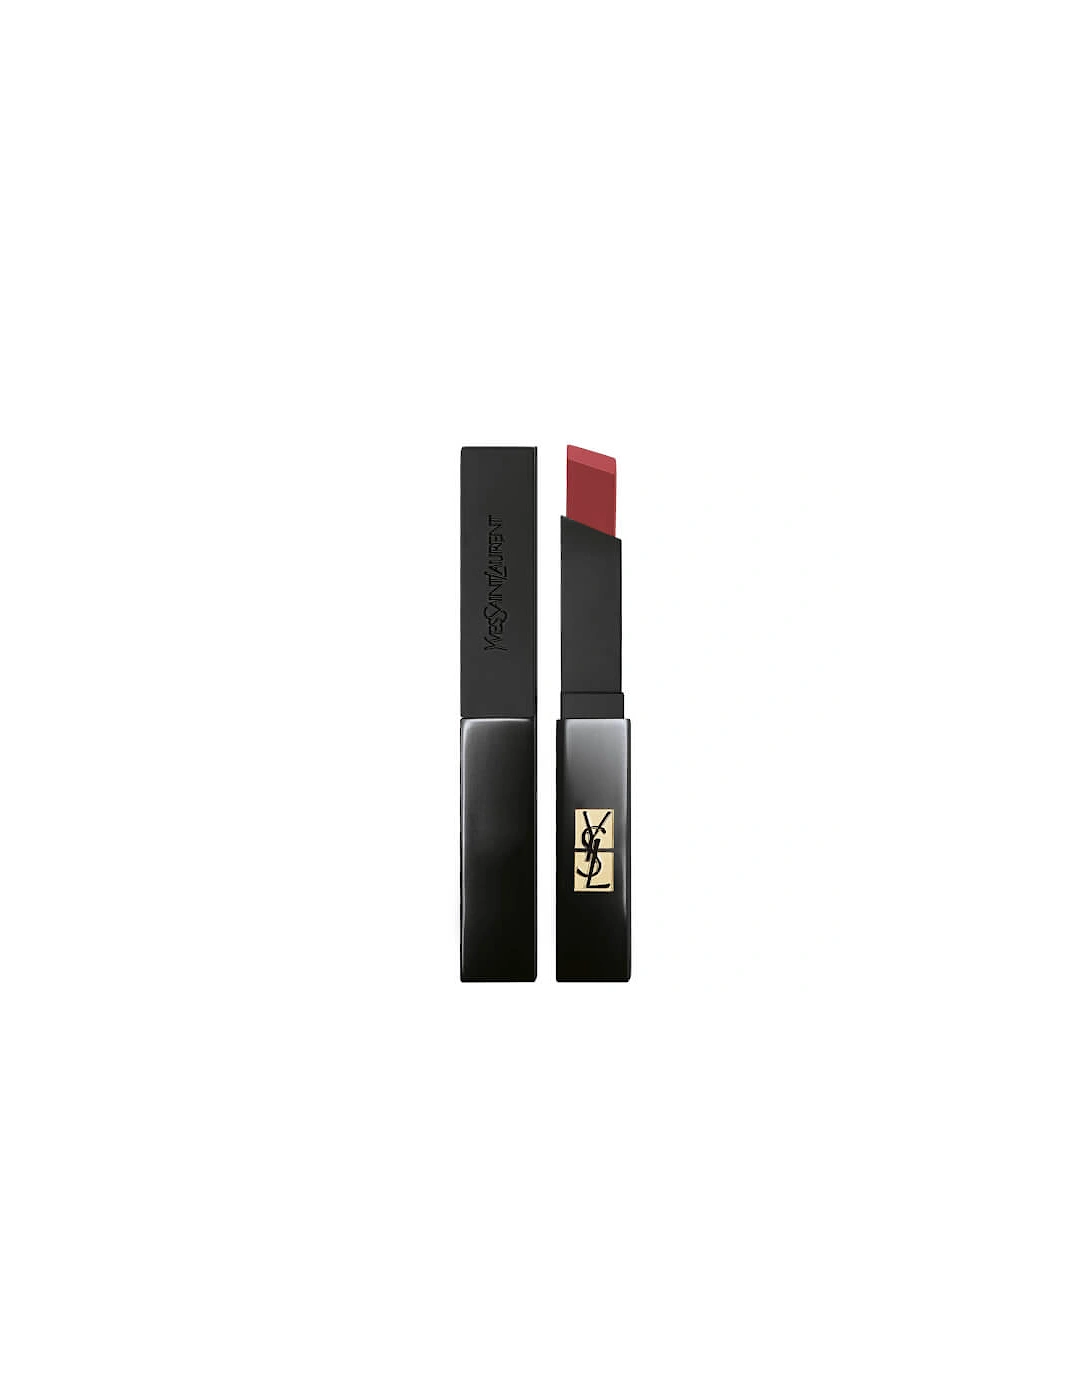 Yves Saint Laurent The Slim Velvet Radical Lipstick - 301 Radical Brown, 2 of 1